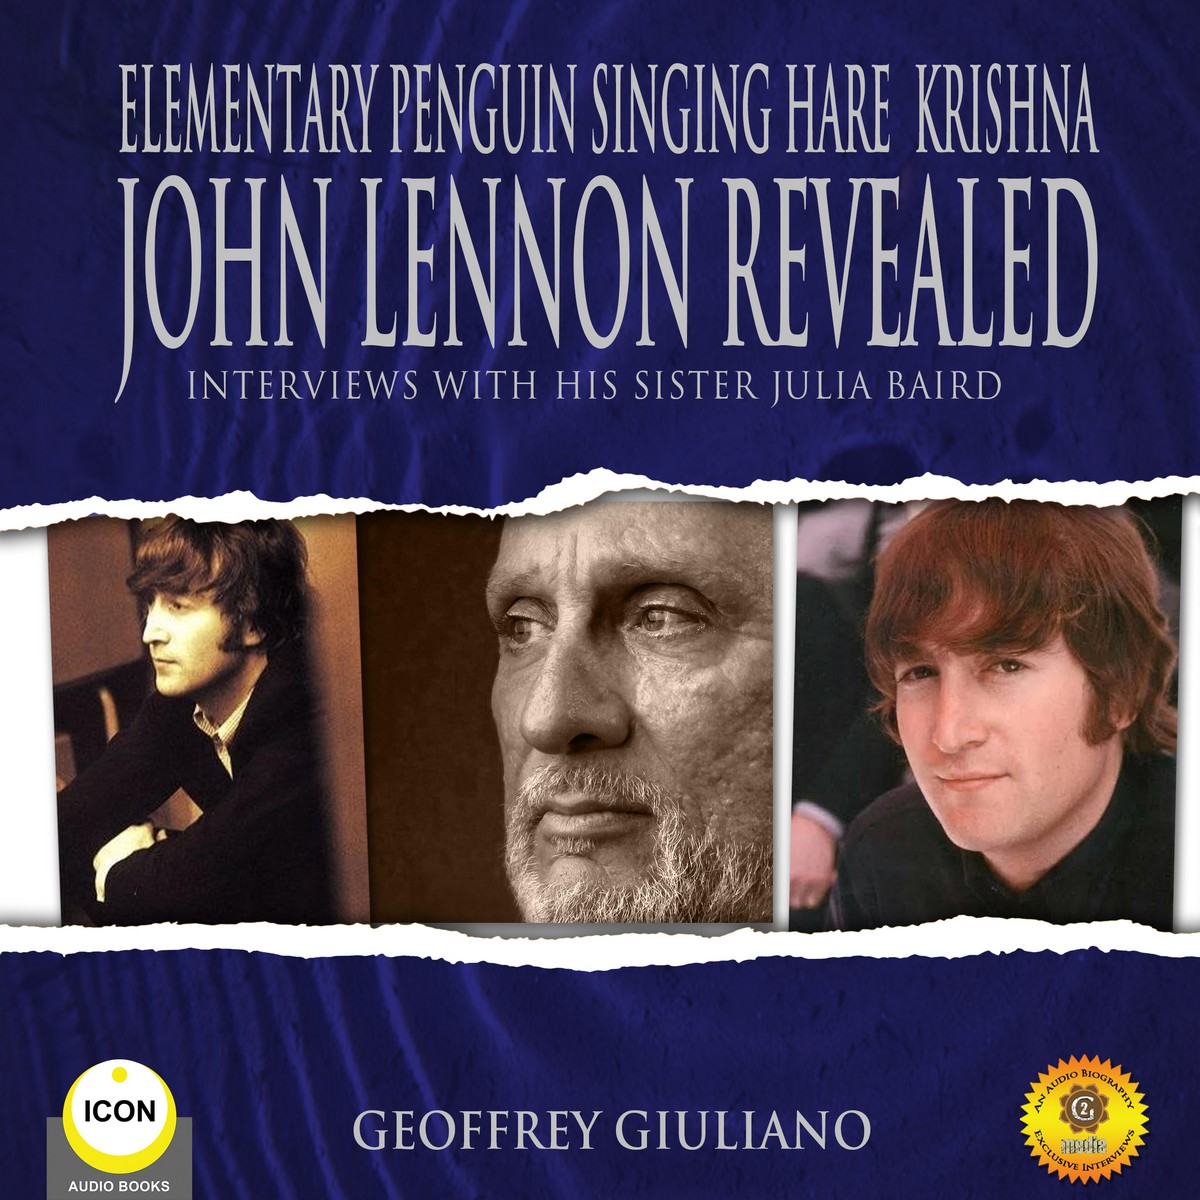 Elementary Penguin Singing Hare Krishna John Lennon Revealed – Interviews With His Sister Julia Baird